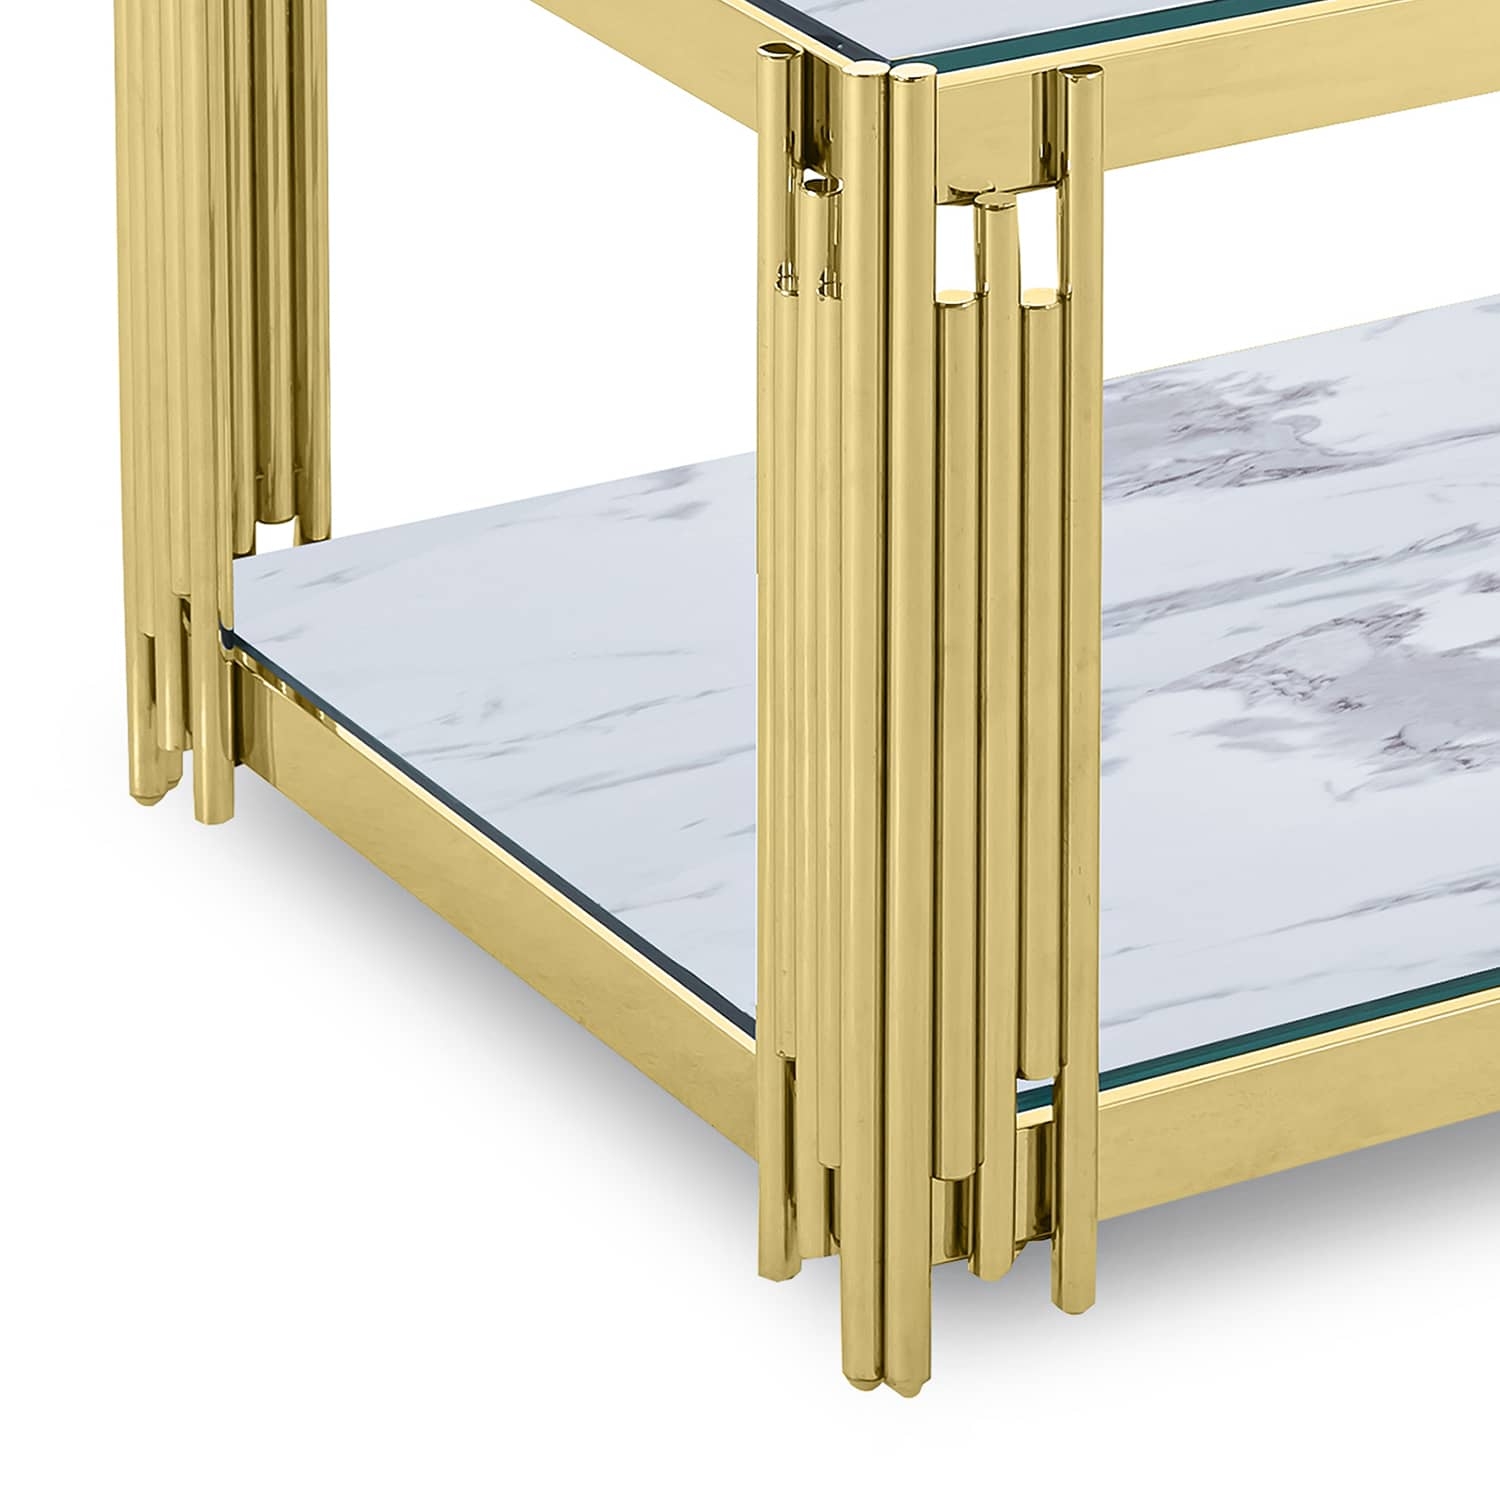 Table basse rectangle en verre effet marbre blanc et pieds en métal doré